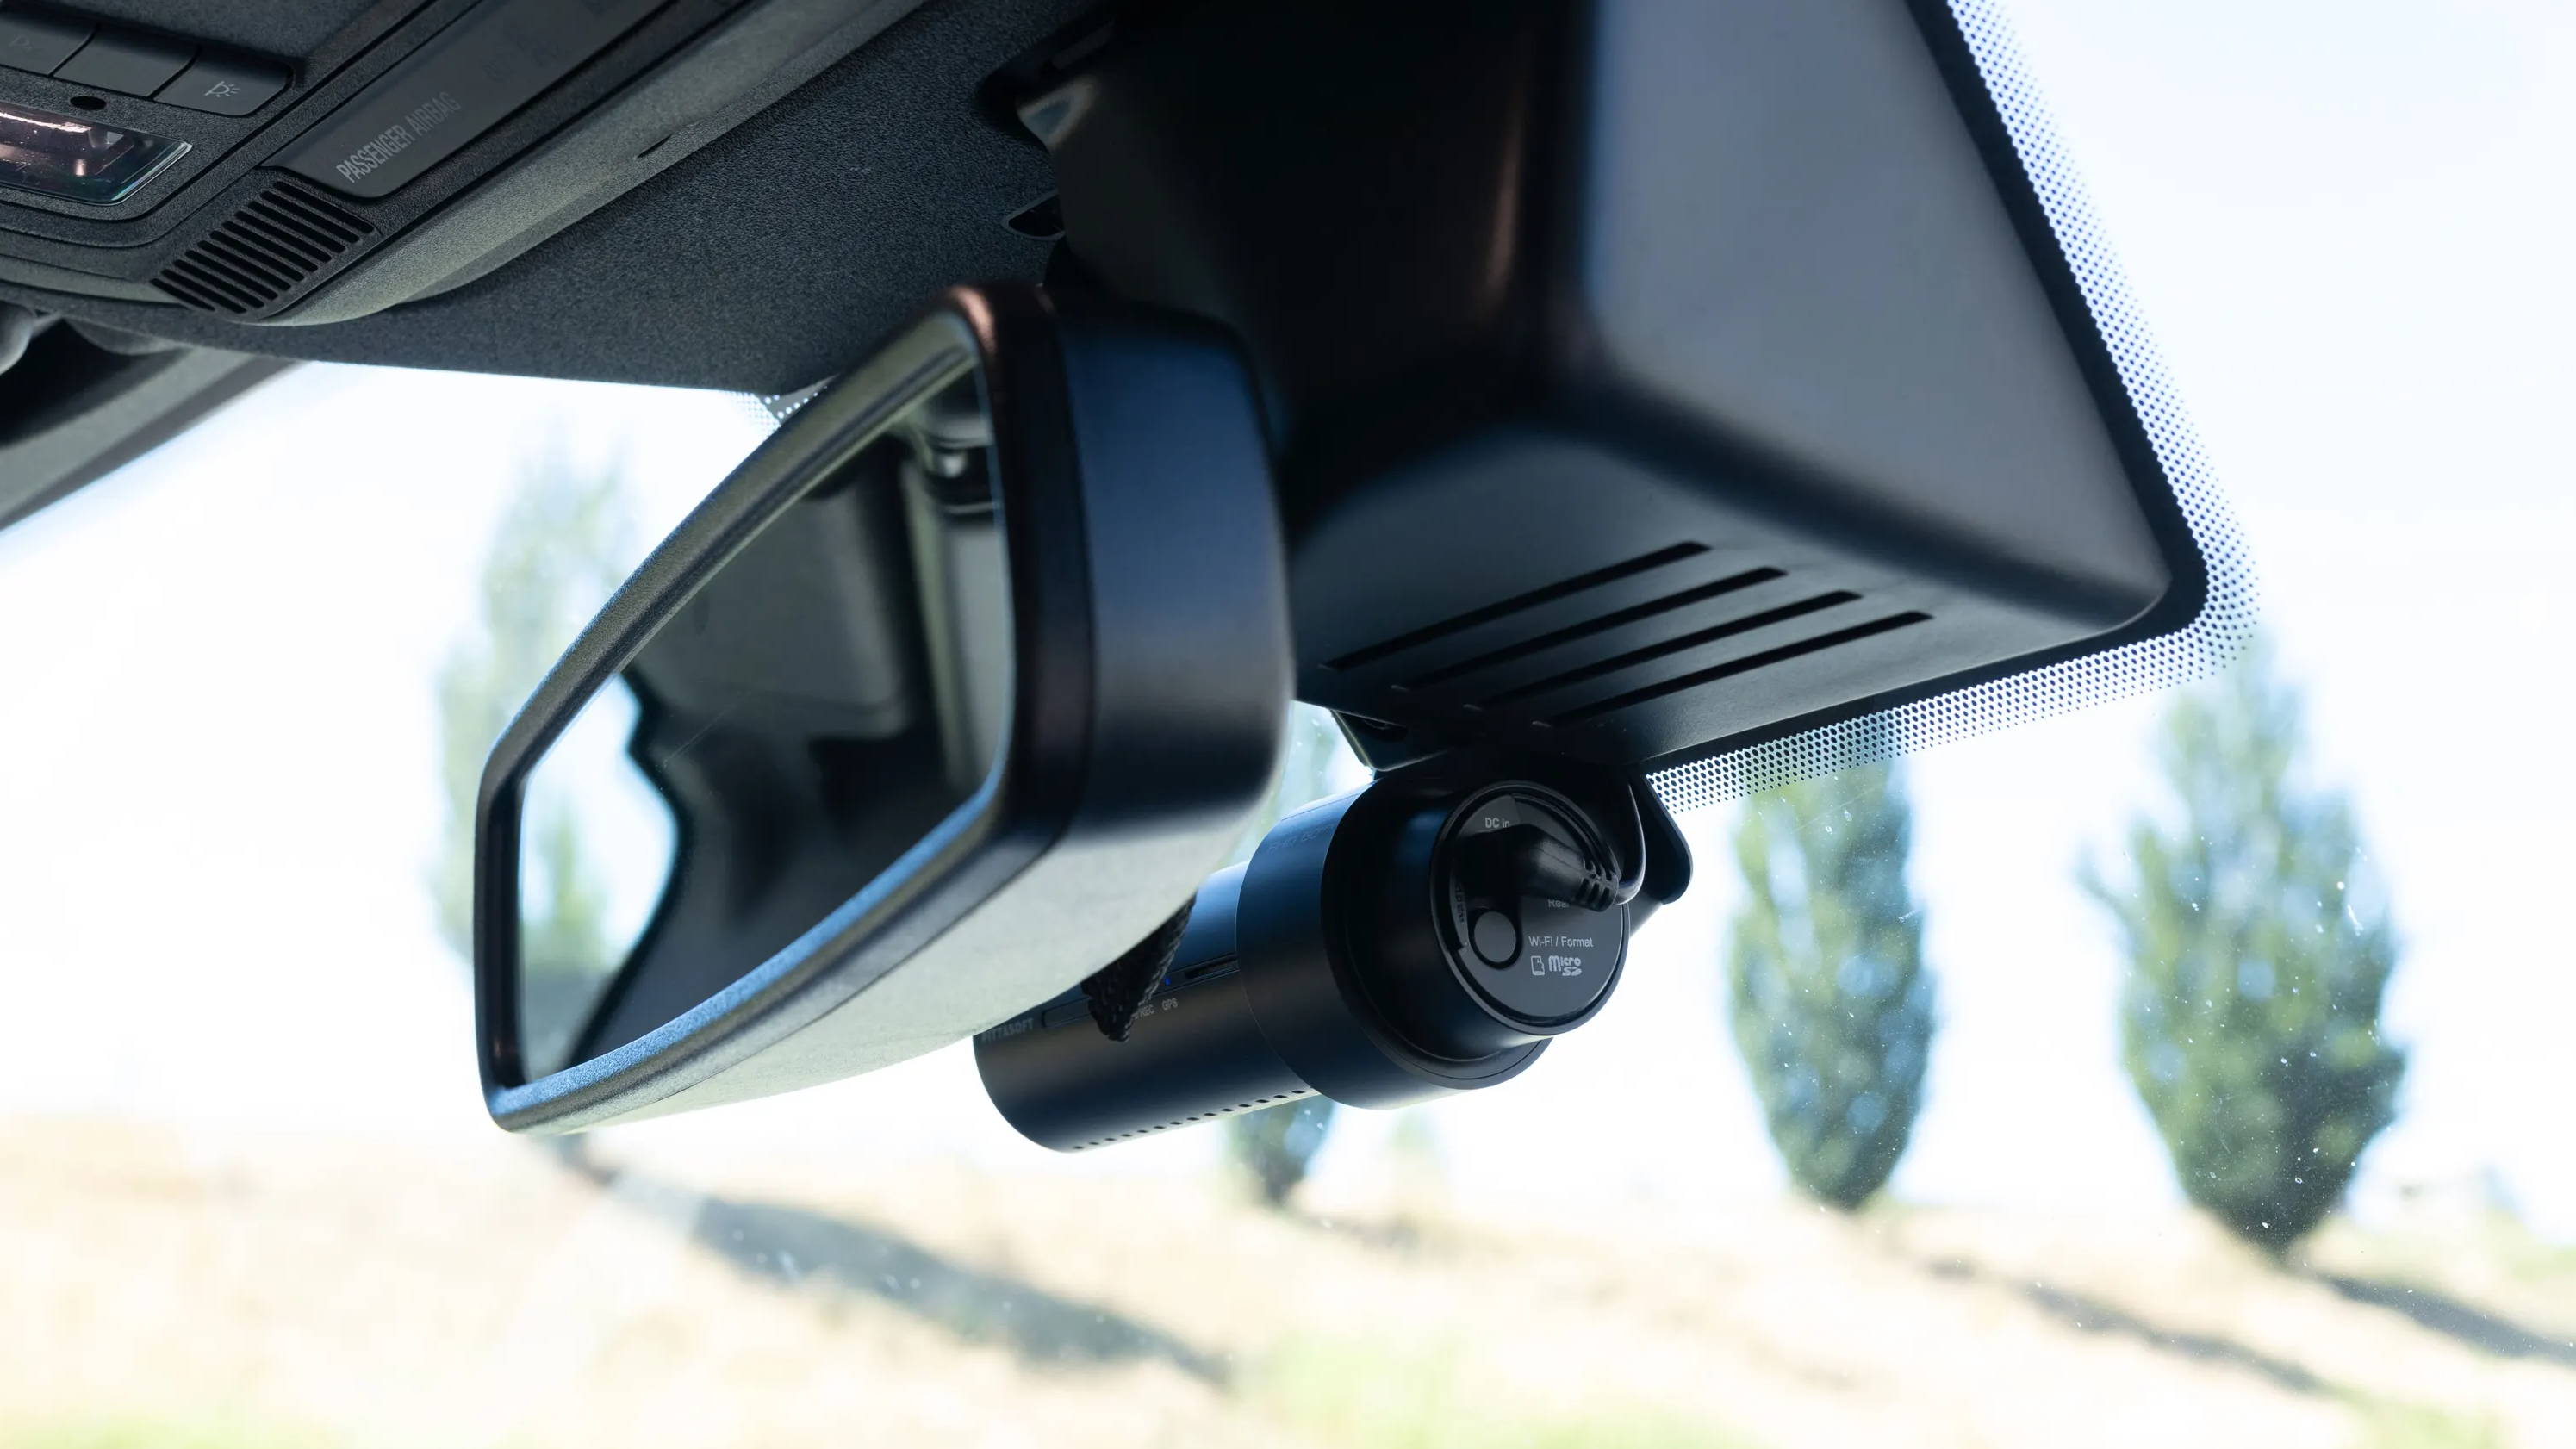 BlackboxMyCar  Dash Cam Installation: Dual-Channel Dash Cam in a Ford